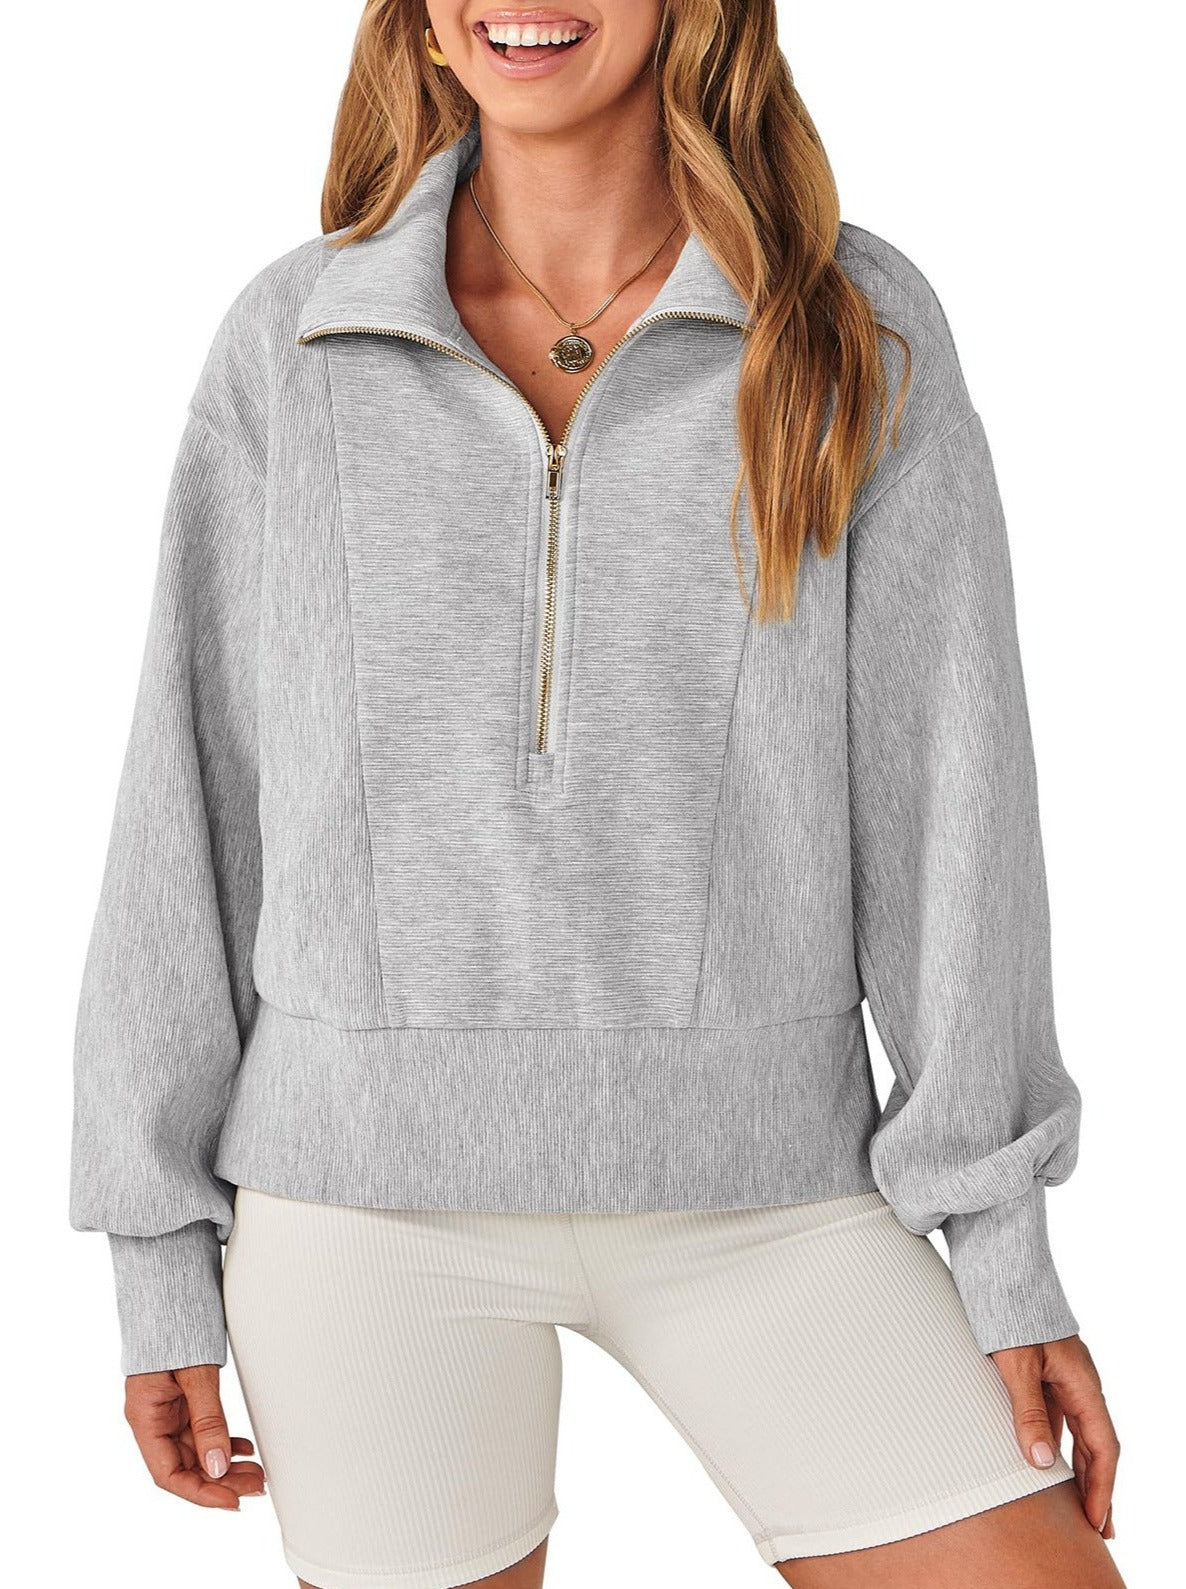 NTG Fad TOP gray / S Half Zip Pullover Long Sleeve Sweatshirt